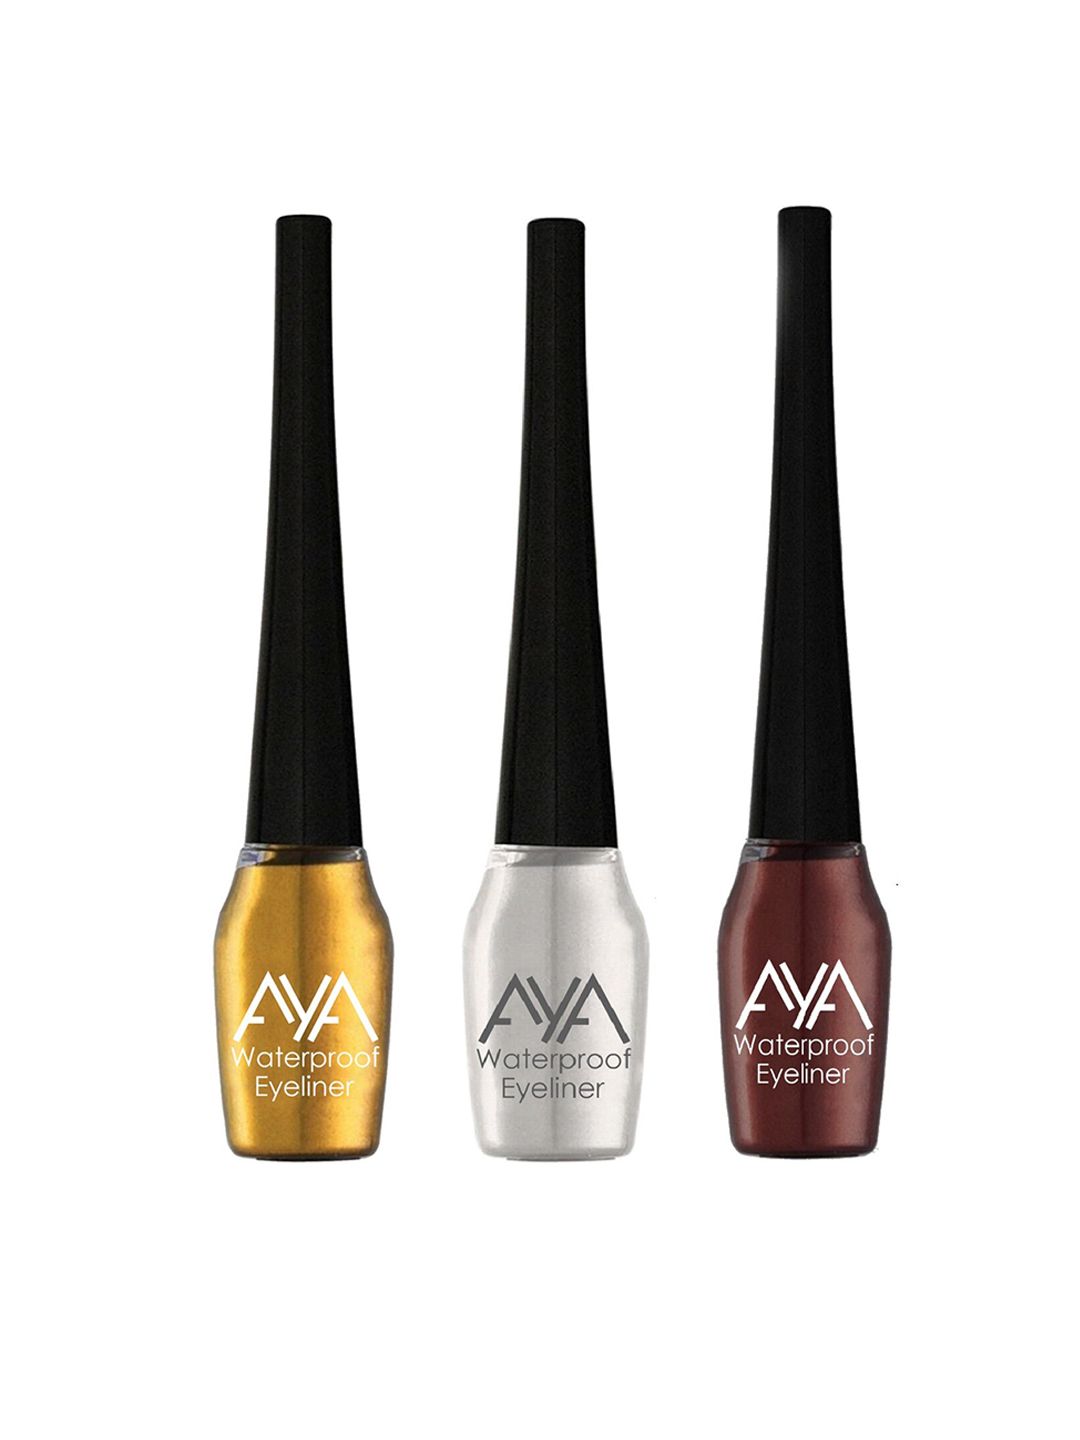 AYA Set of 3 Waterproof Eyeliner - Golden, Silver & Brown - 5 ml each Price in India